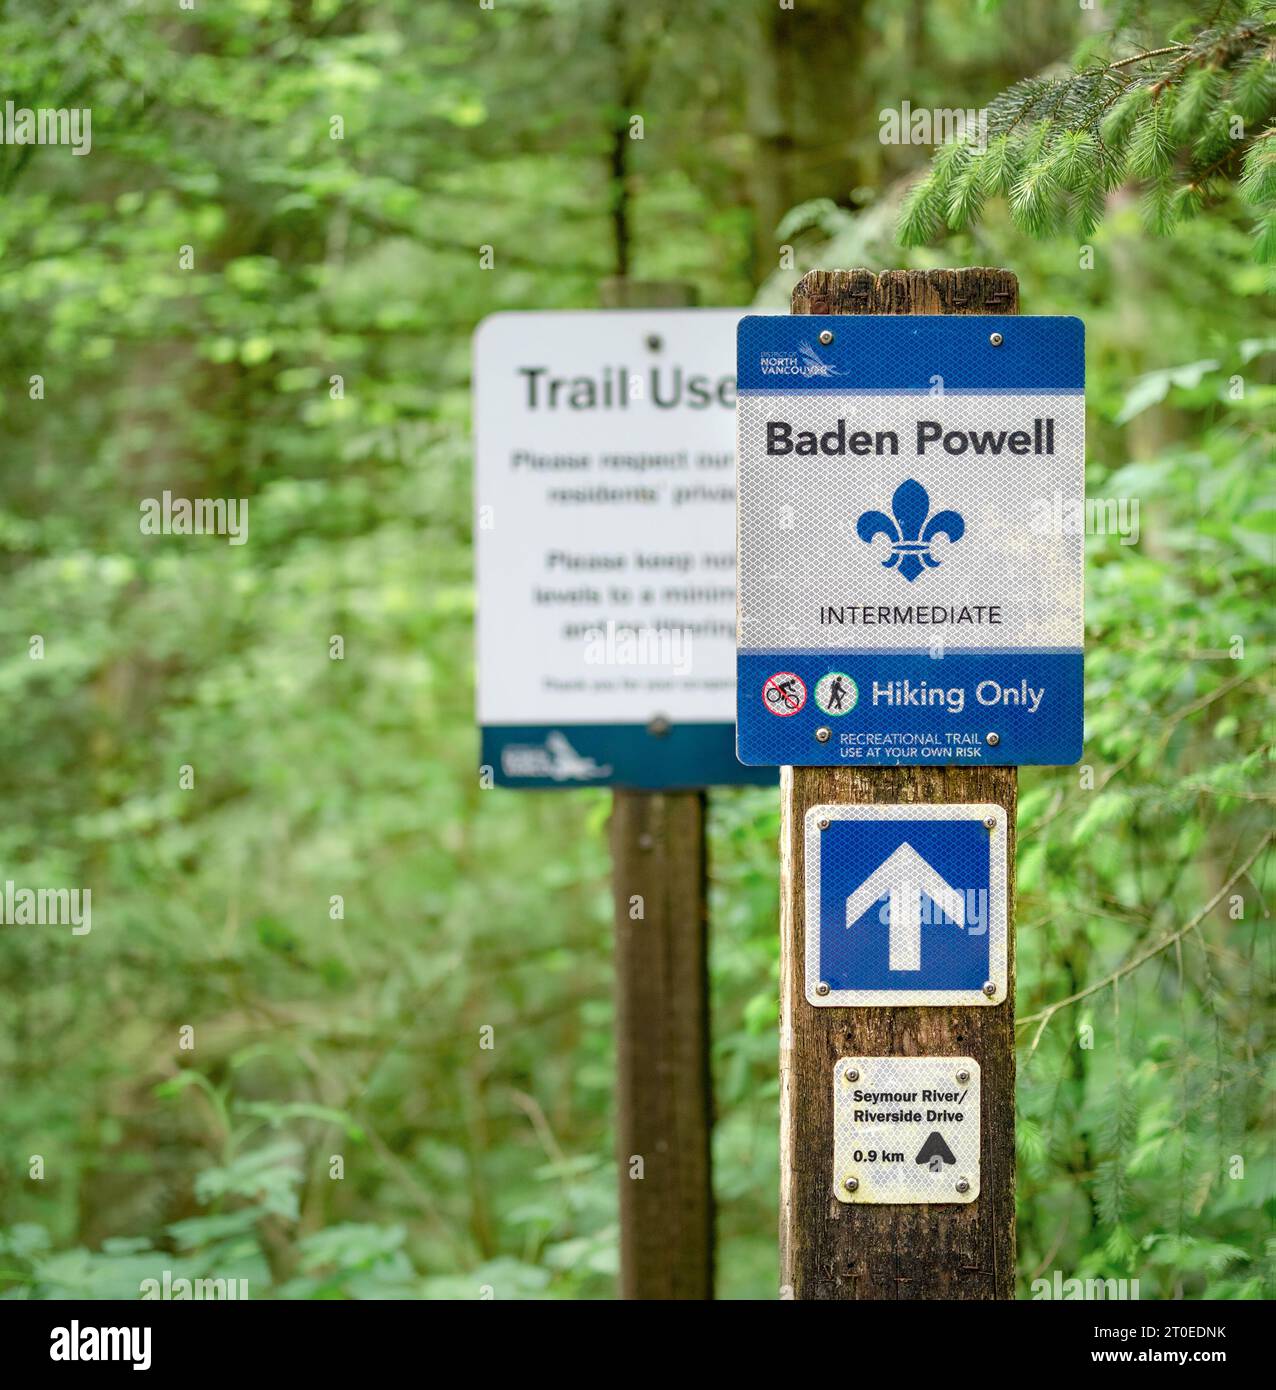 Berühmtes Schild für den Baden Powell Wander Trail in North Vancouver. Reflektierendes Muster mit Richtungspfeil. Selektiver Fokus mit unscharfem grünem Waldrücken Stockfoto